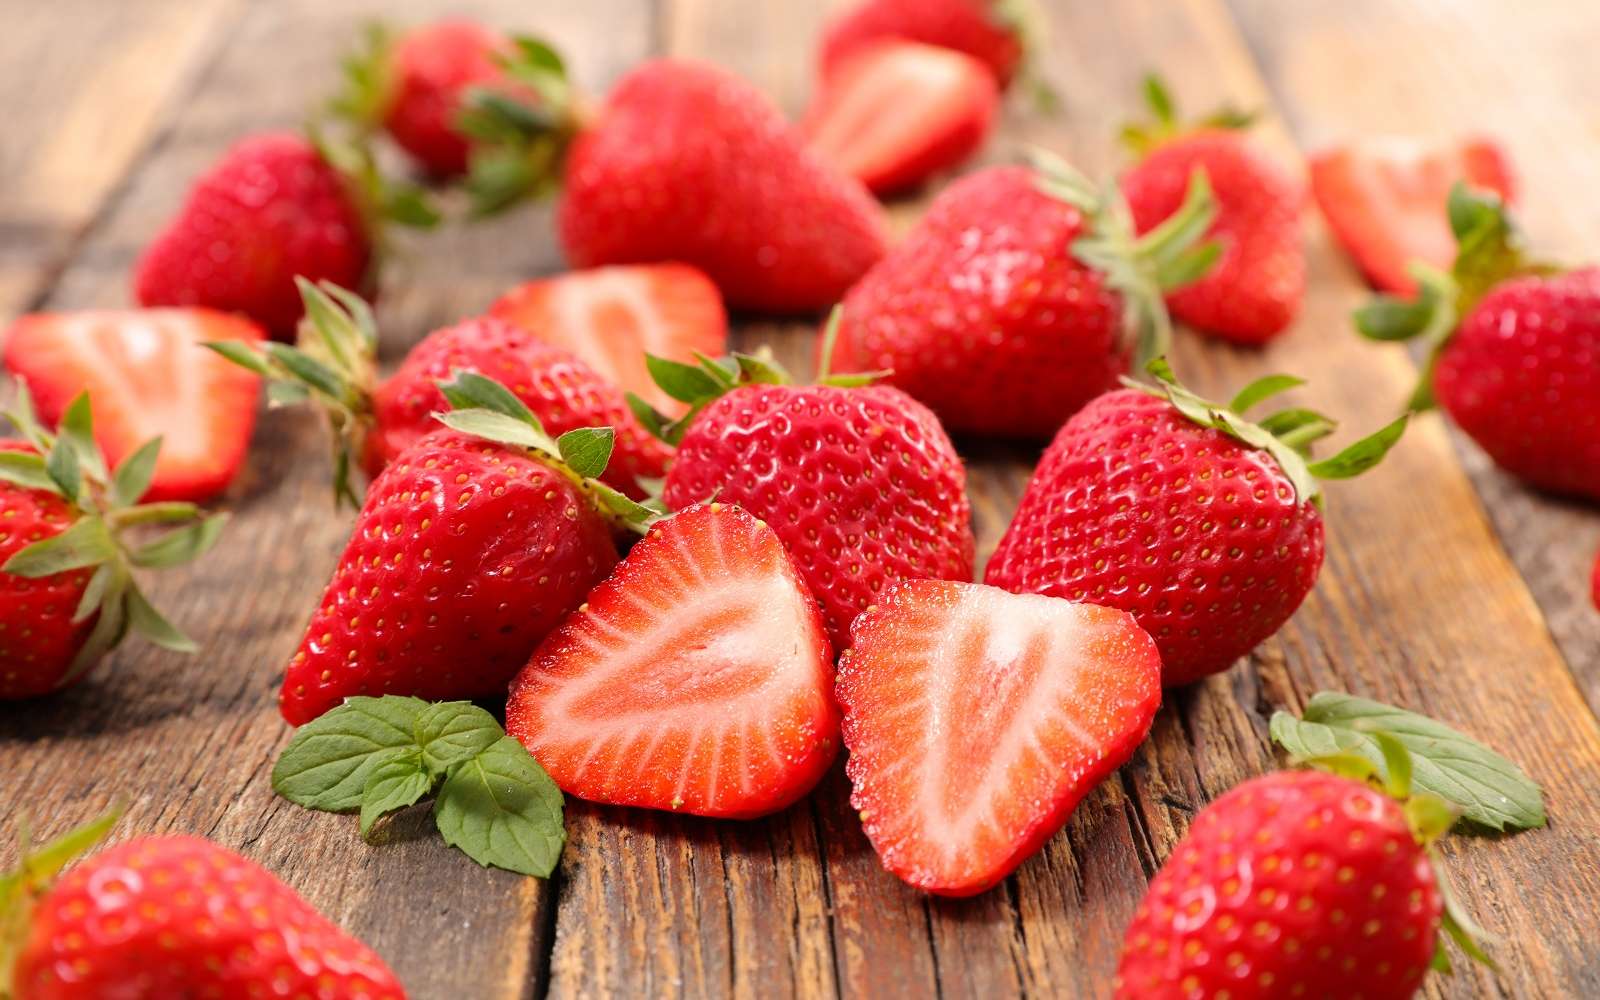 Récolte de fraises, petits fruits rouges savoureux. © M.studio, Adobe Stock